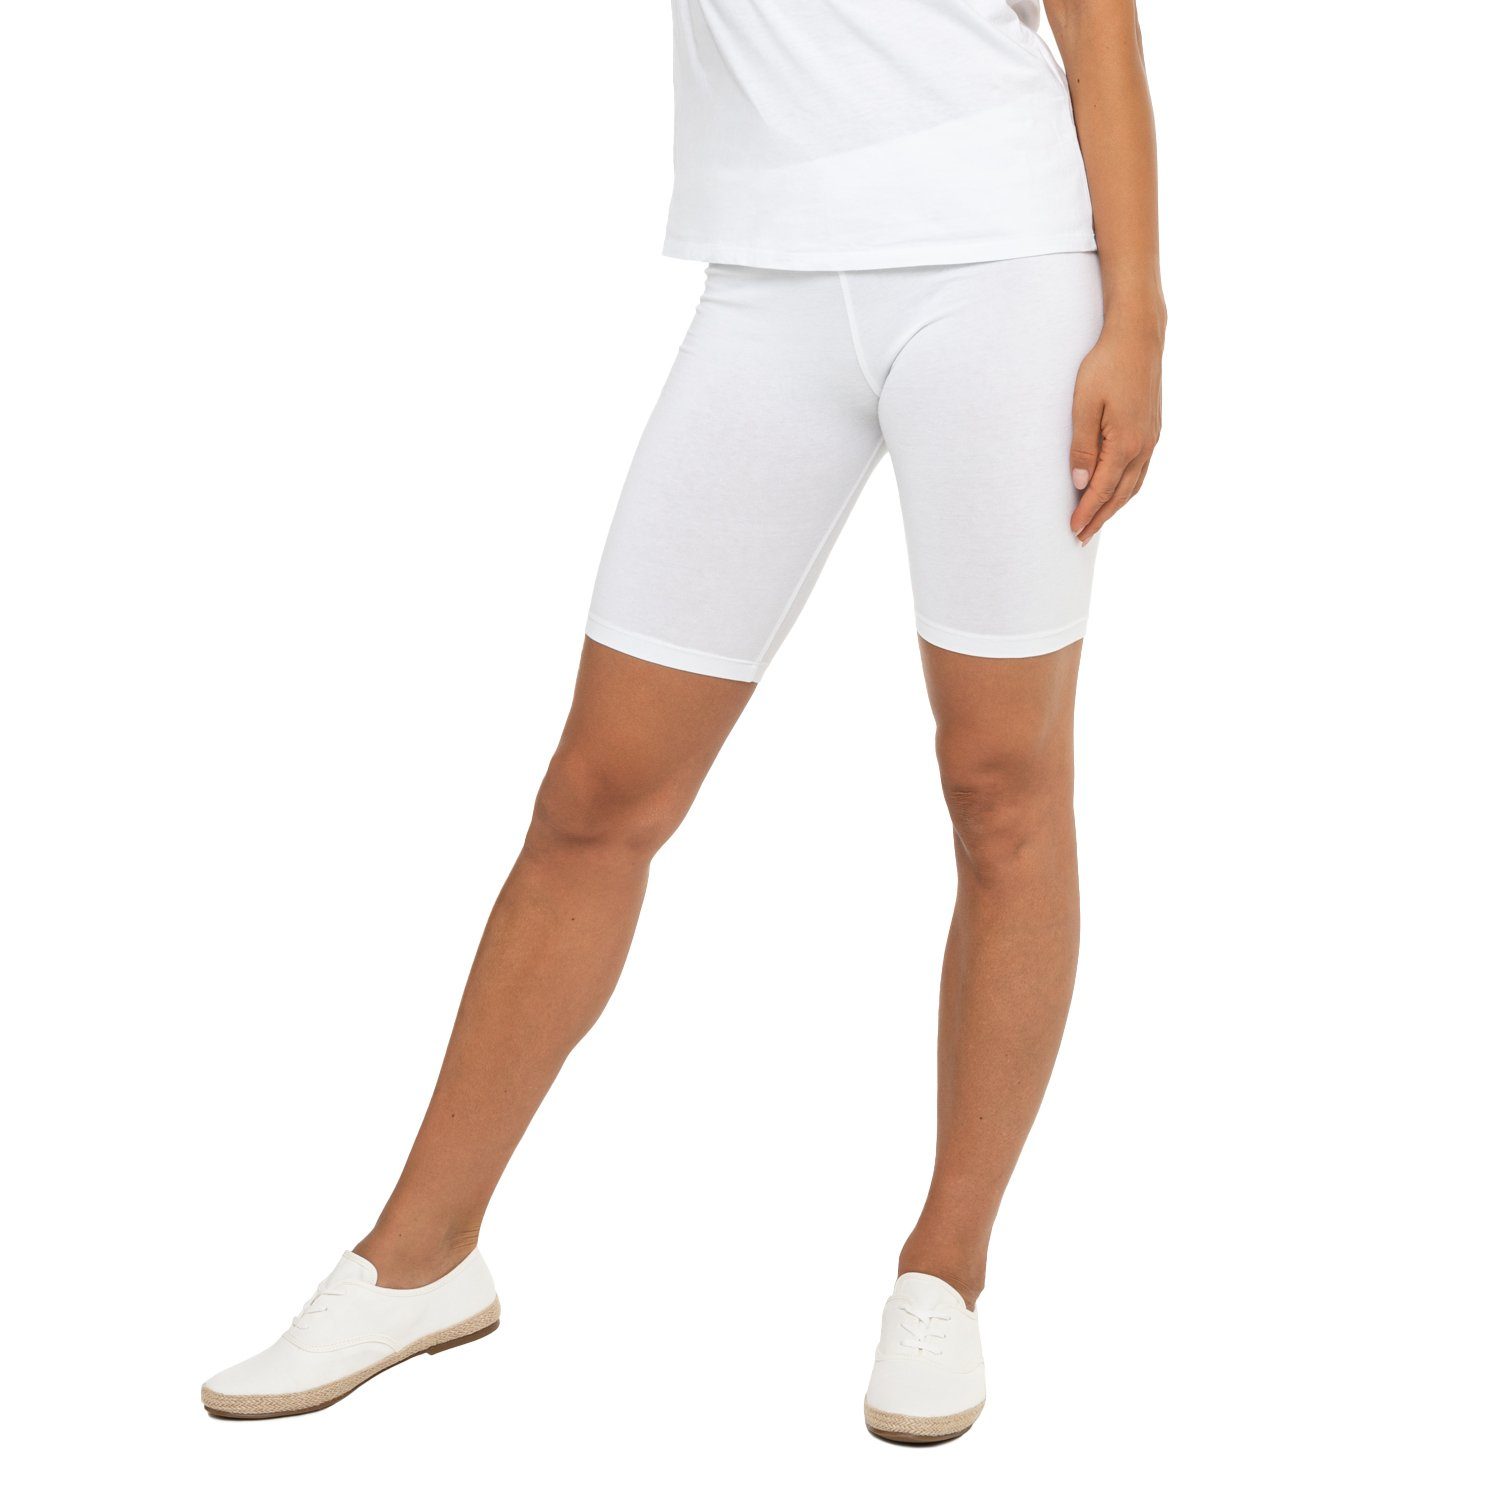 Radlerhose Kurzleggings Damen celodoro Stretch-Jersey aus Baumwolle Weiß Shorts